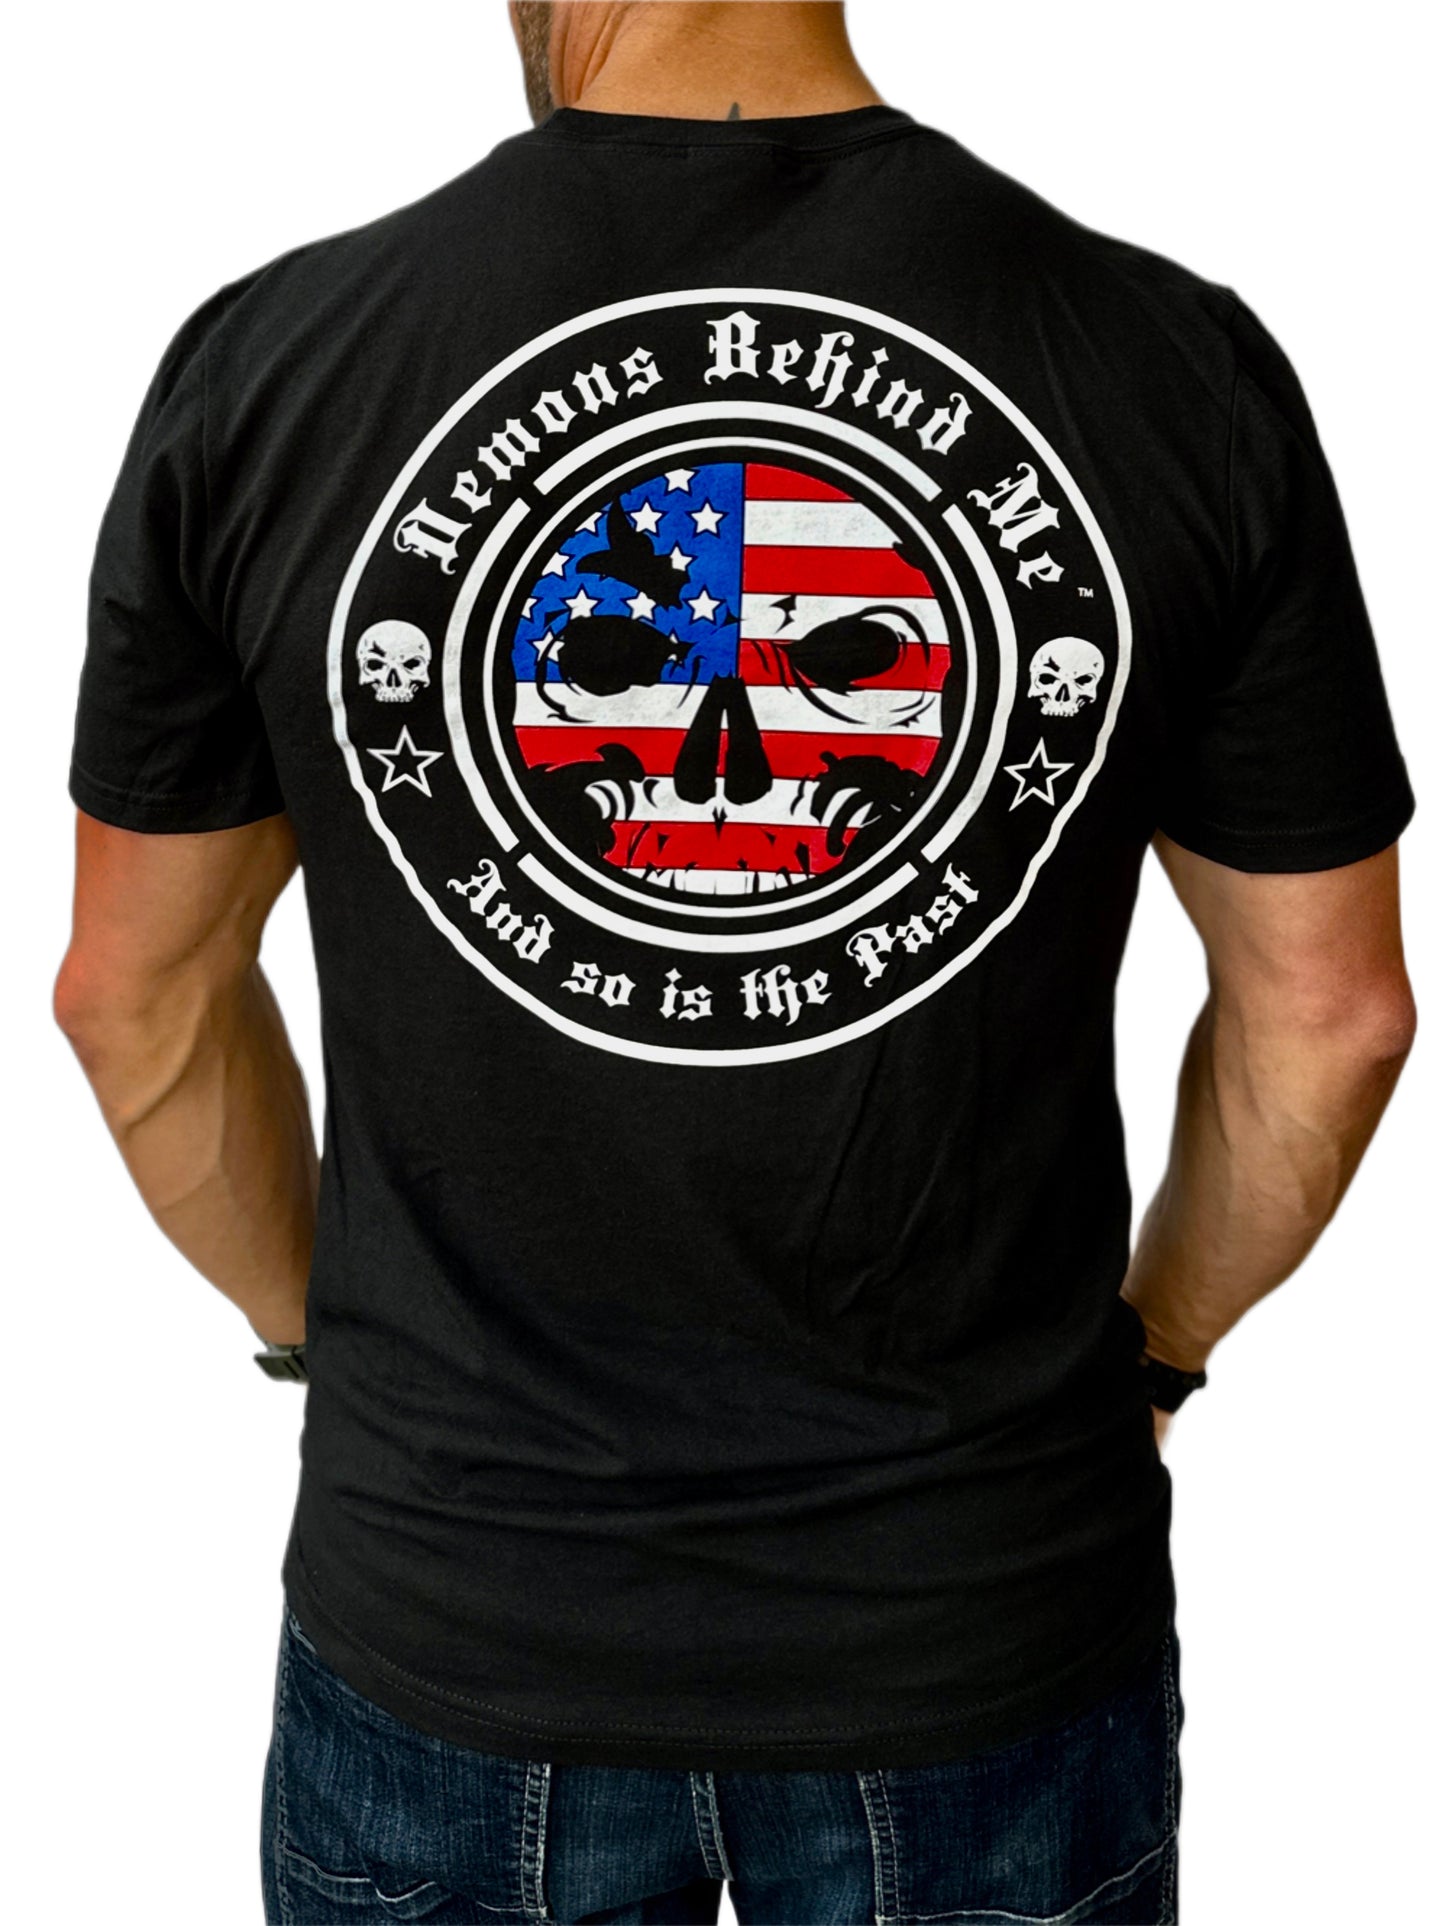 NEW! Men's Light-Weight Black T-Shirt - Patriotic Logo